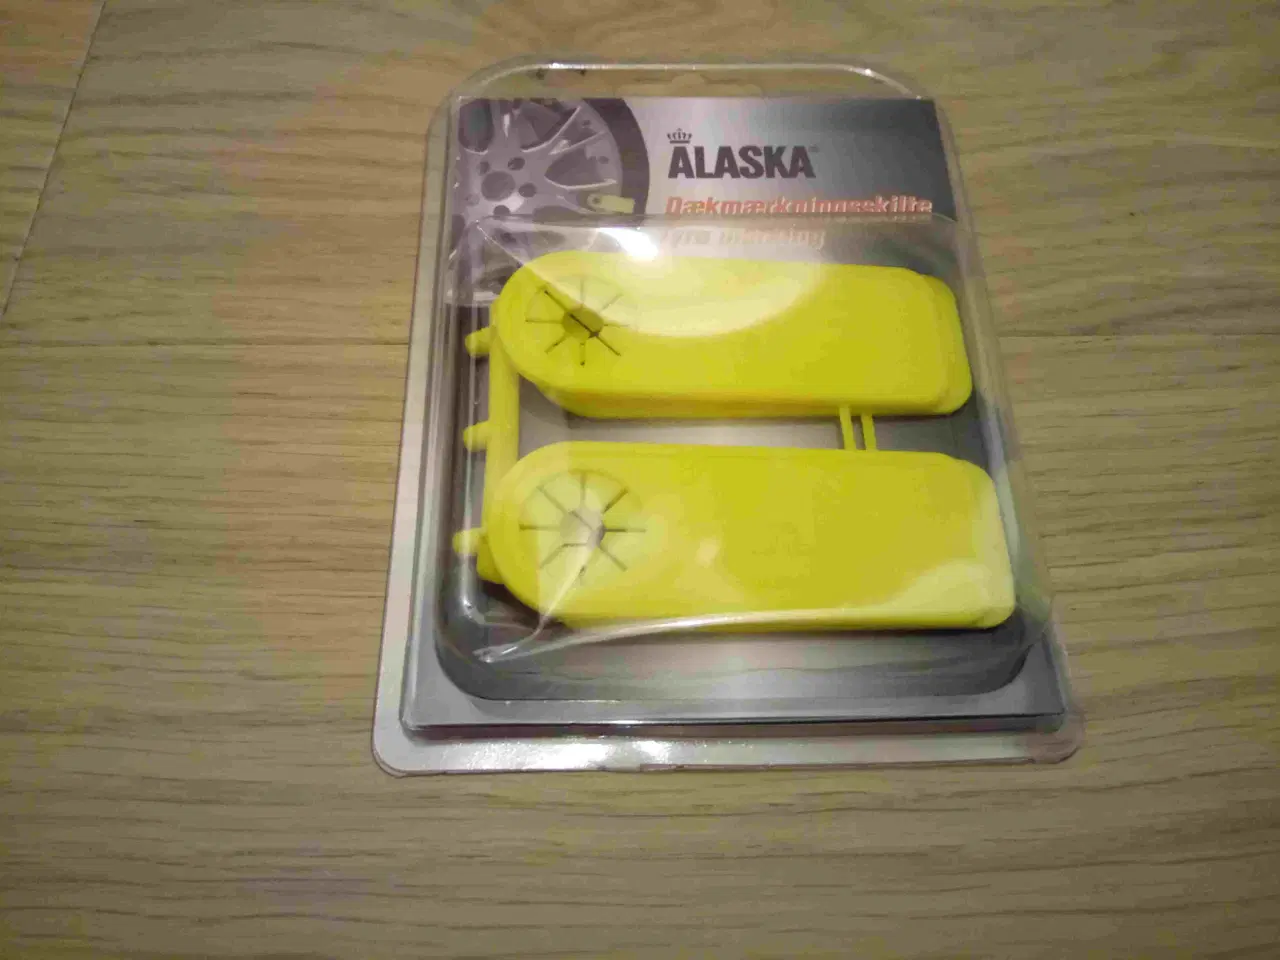 Billede 3 - Alaska dækmærkningsskilte